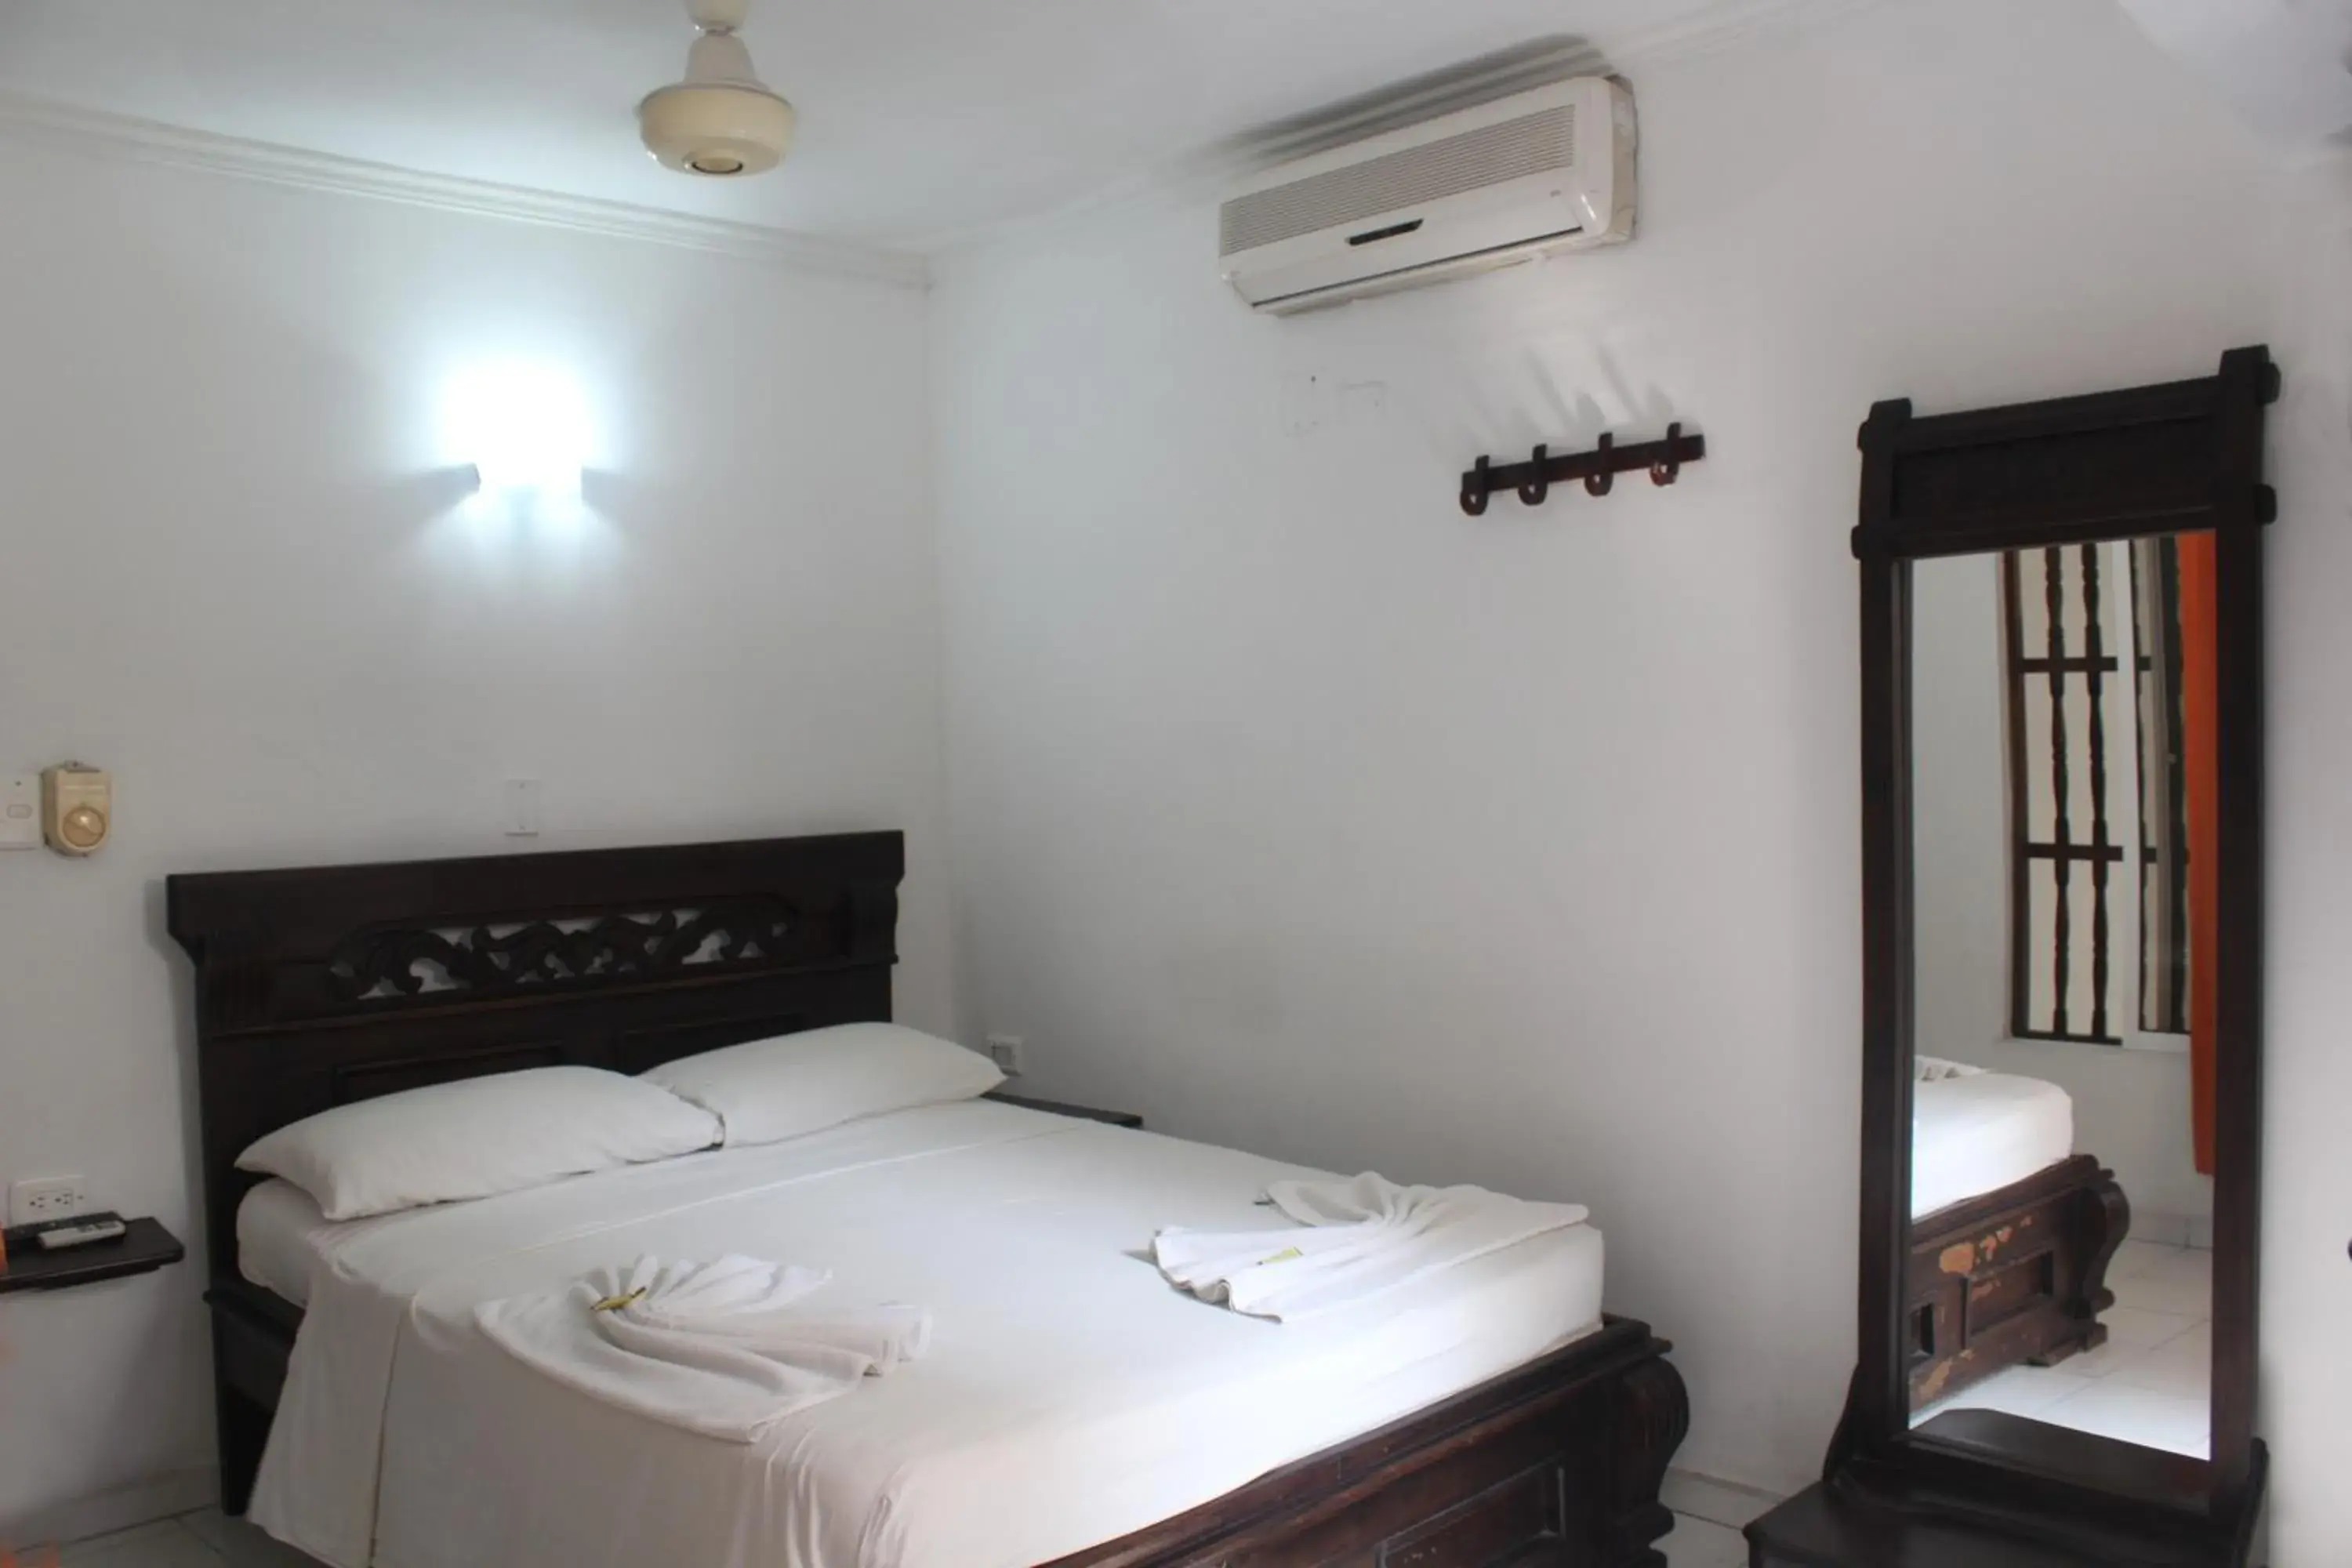 Bedroom, Room Photo in Hotel Villa Colonial